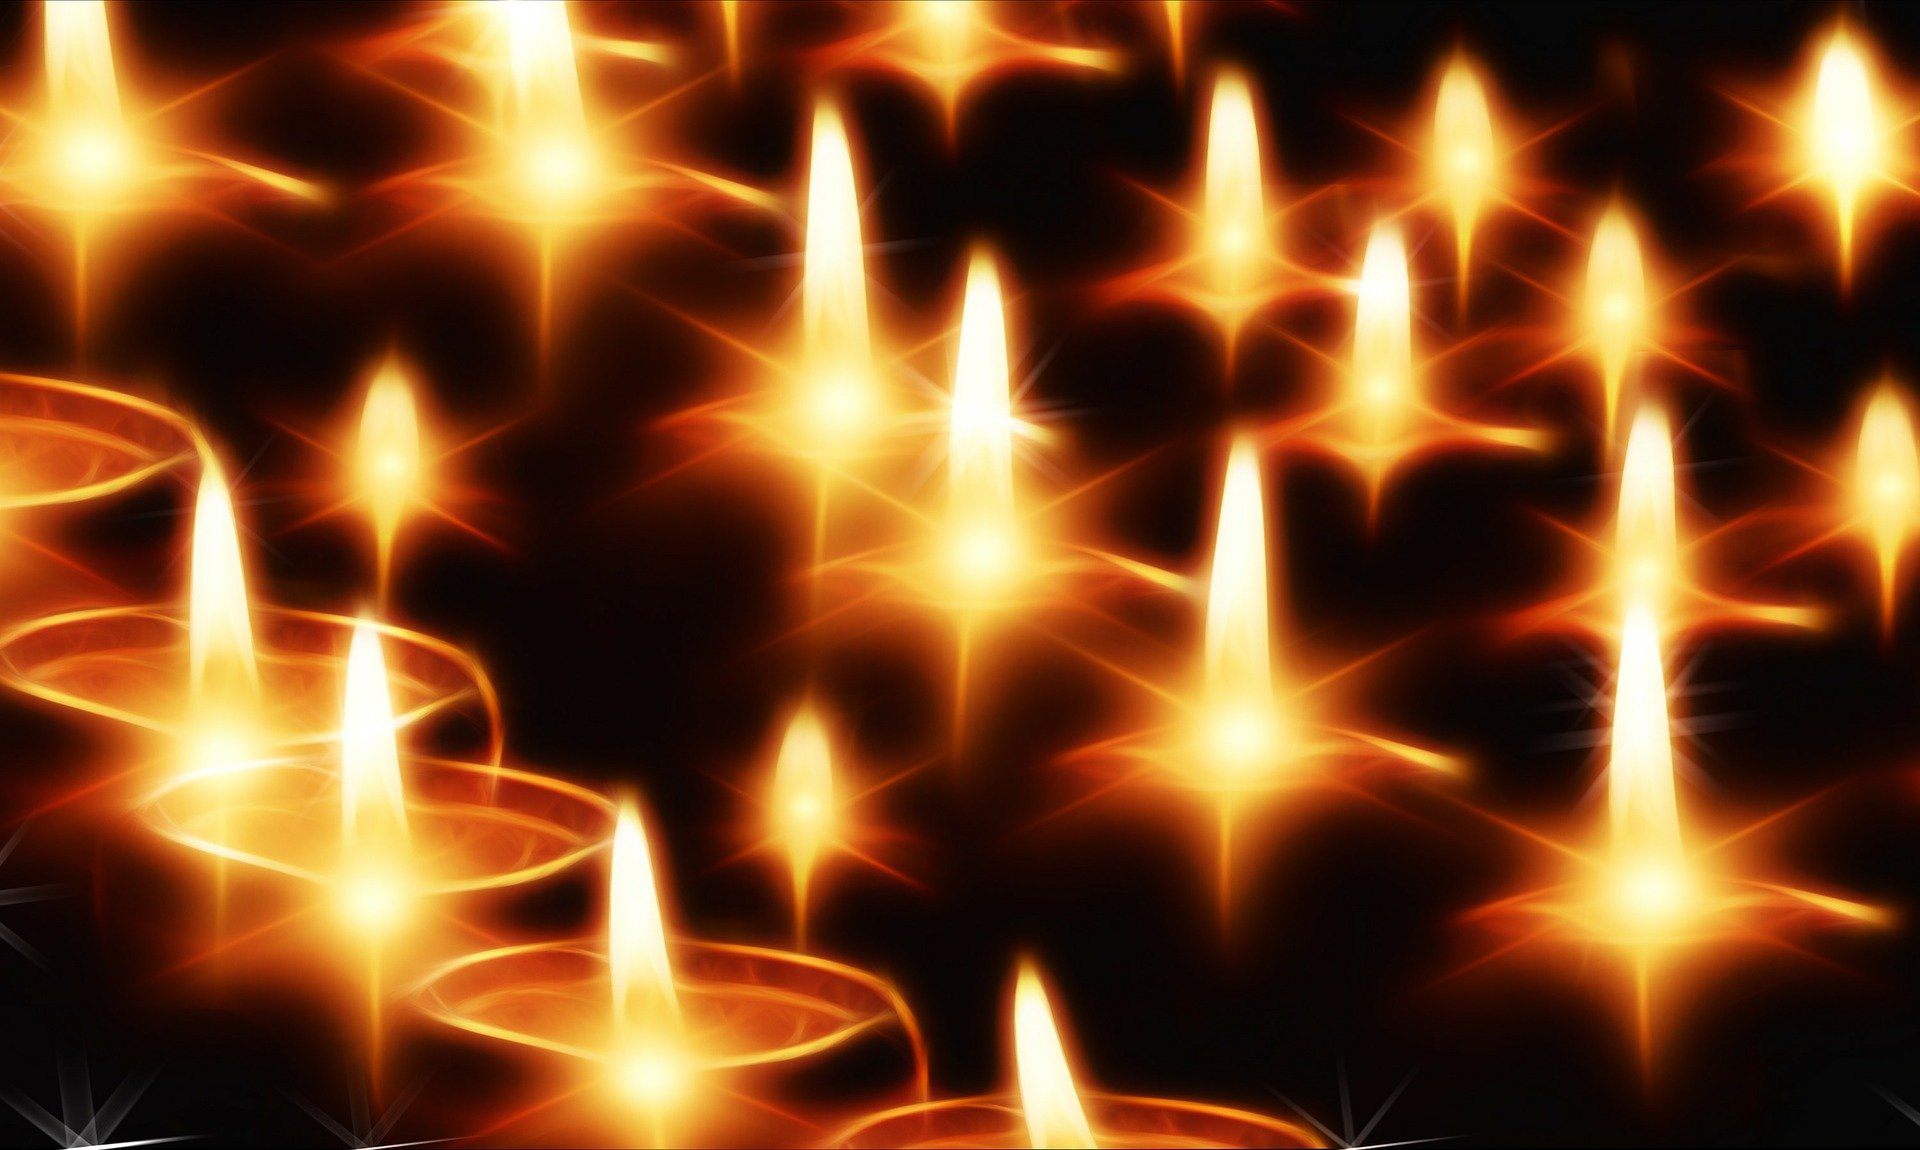 Kerzen (c) Bild von Gerd Altmann auf Pixabay